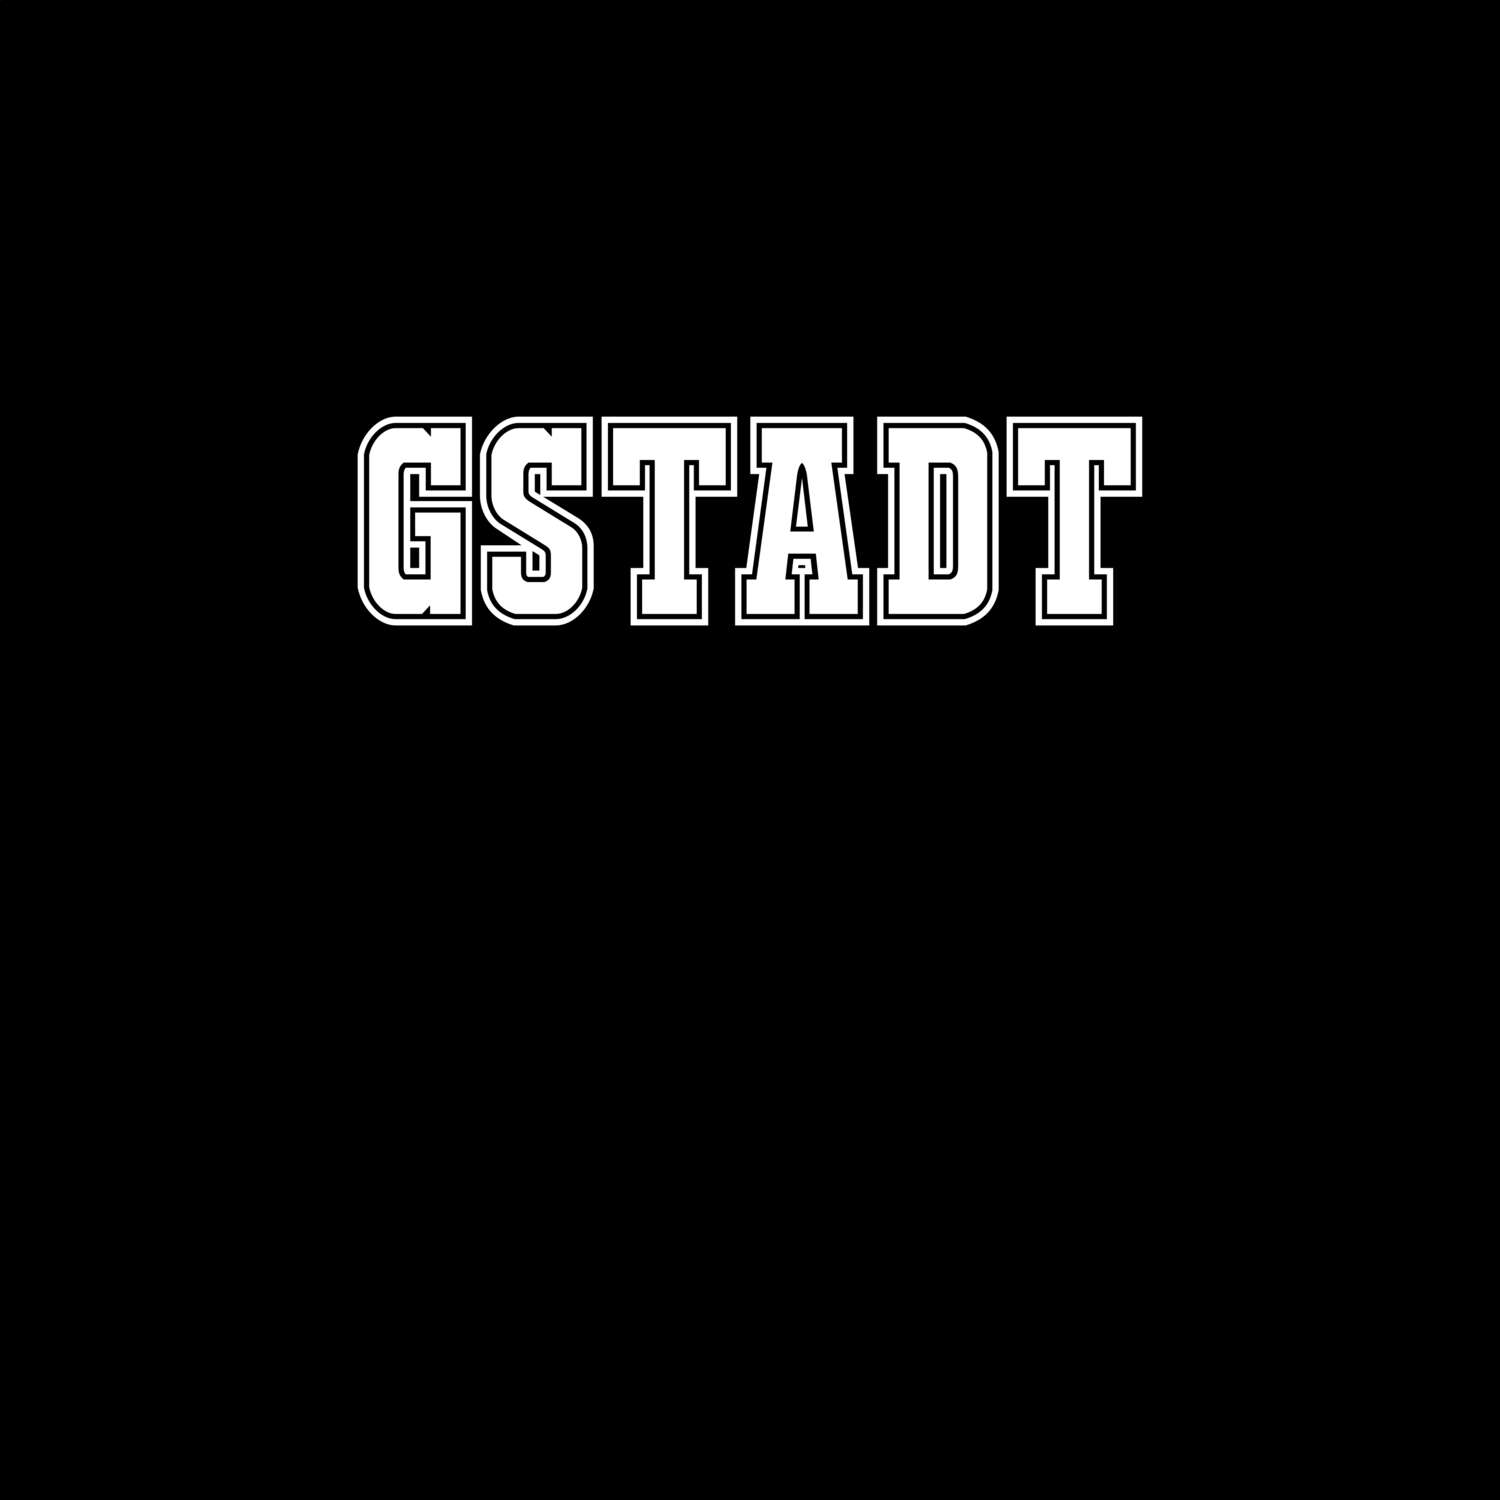 Gstadt T-Shirt »Classic«